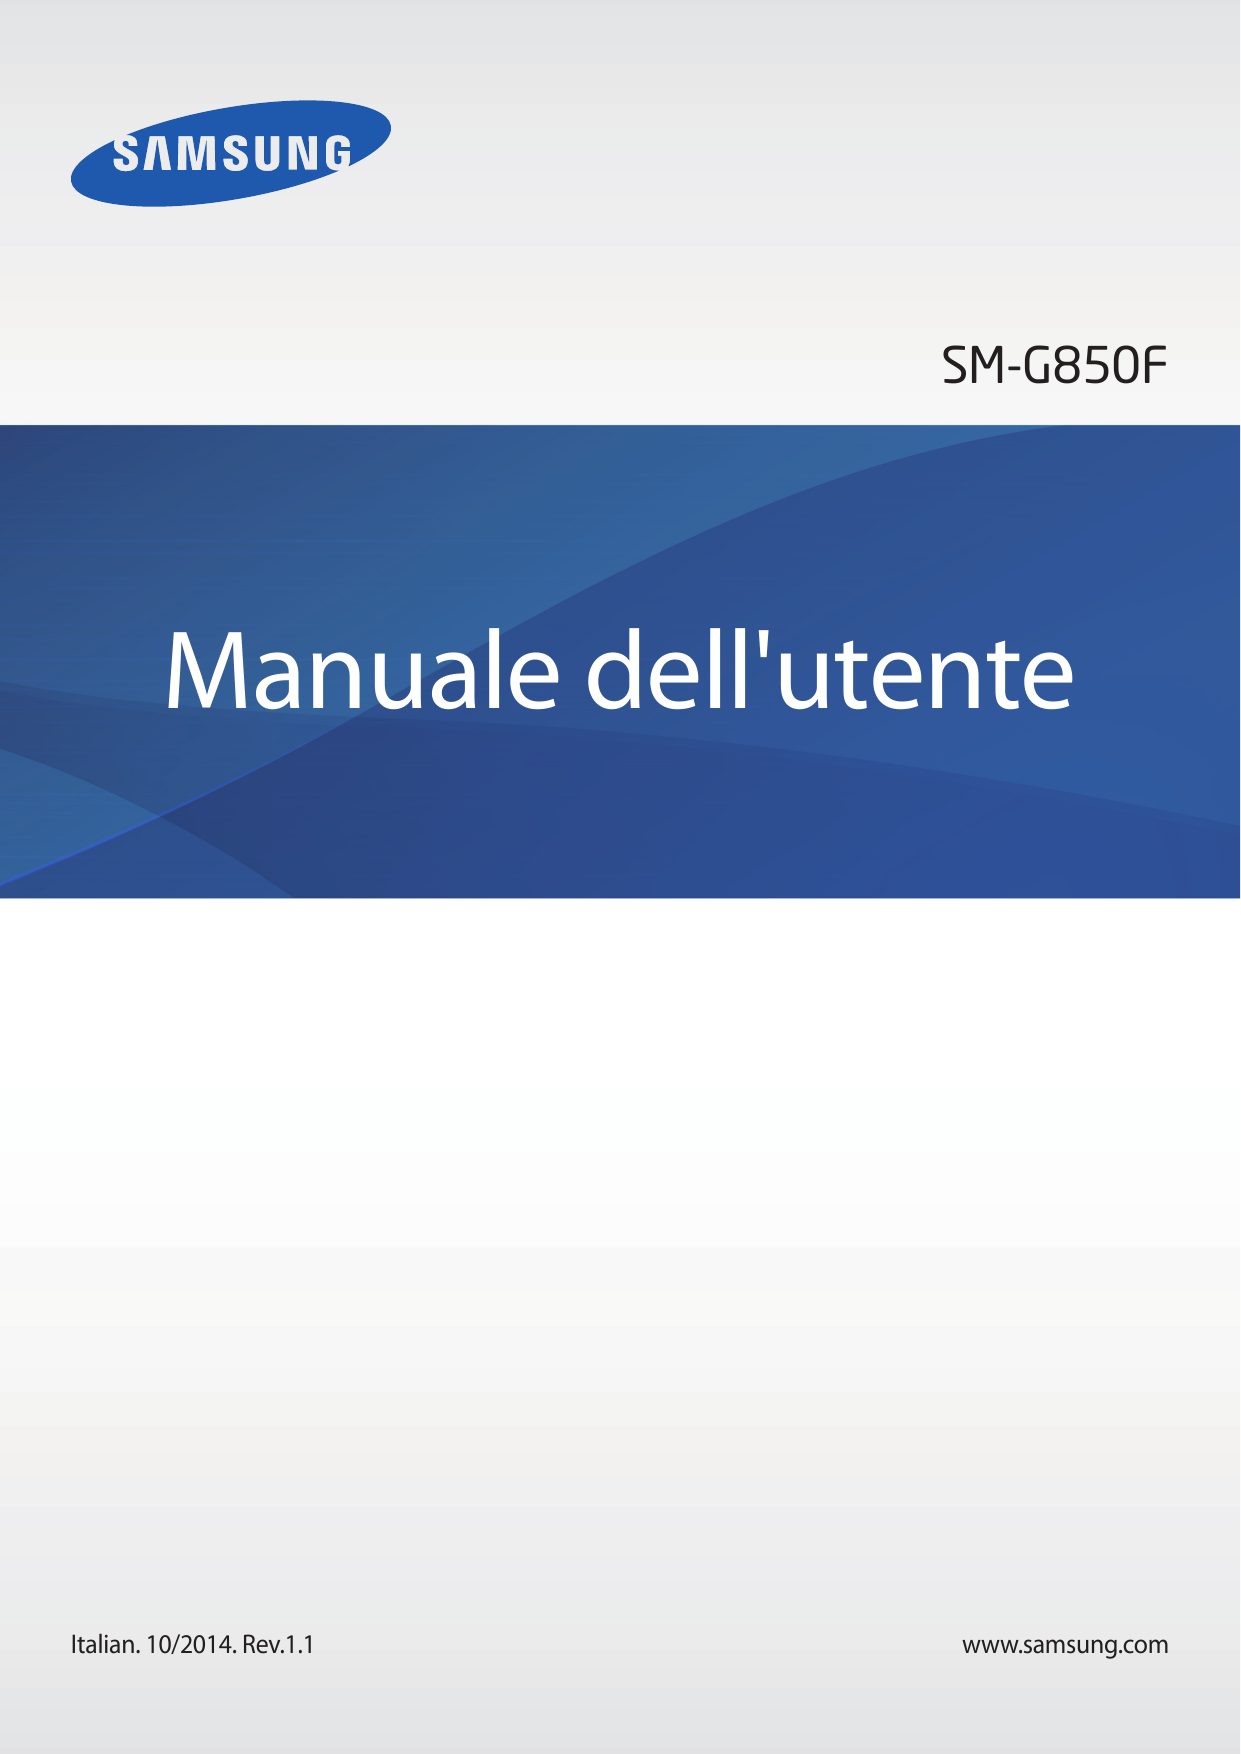 SM-G850FManuale dell'utenteItalian. 10/2014. Rev.1.1www.samsung.com